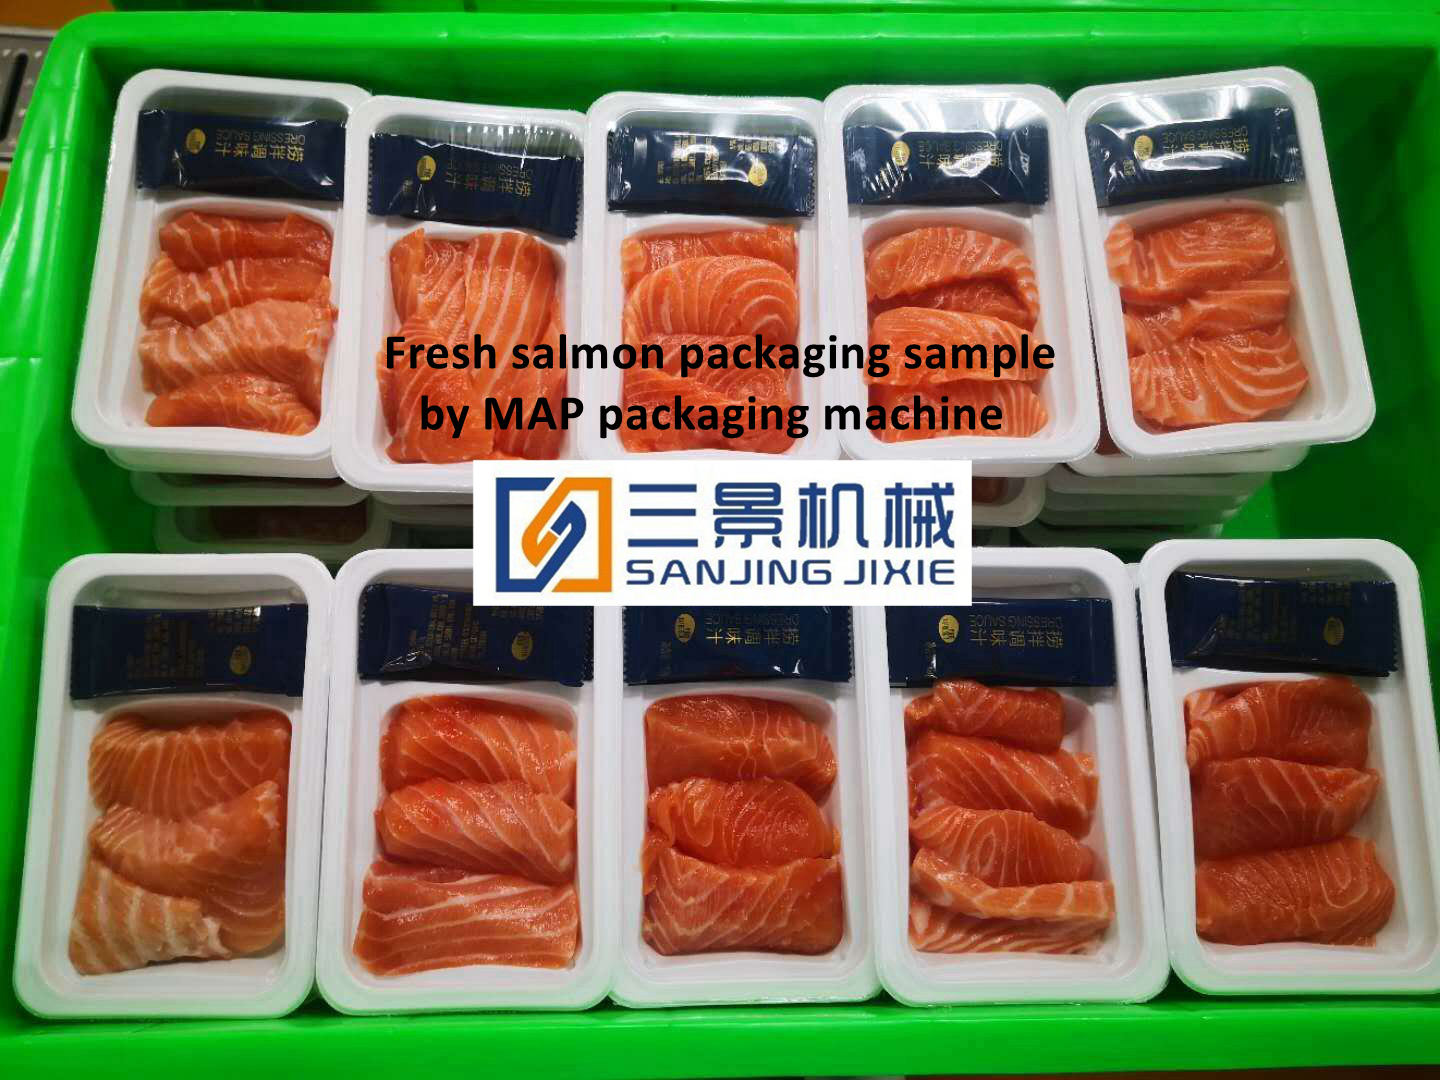 équipements d'emballage sous atmosphère modifiée de saumon en tranches